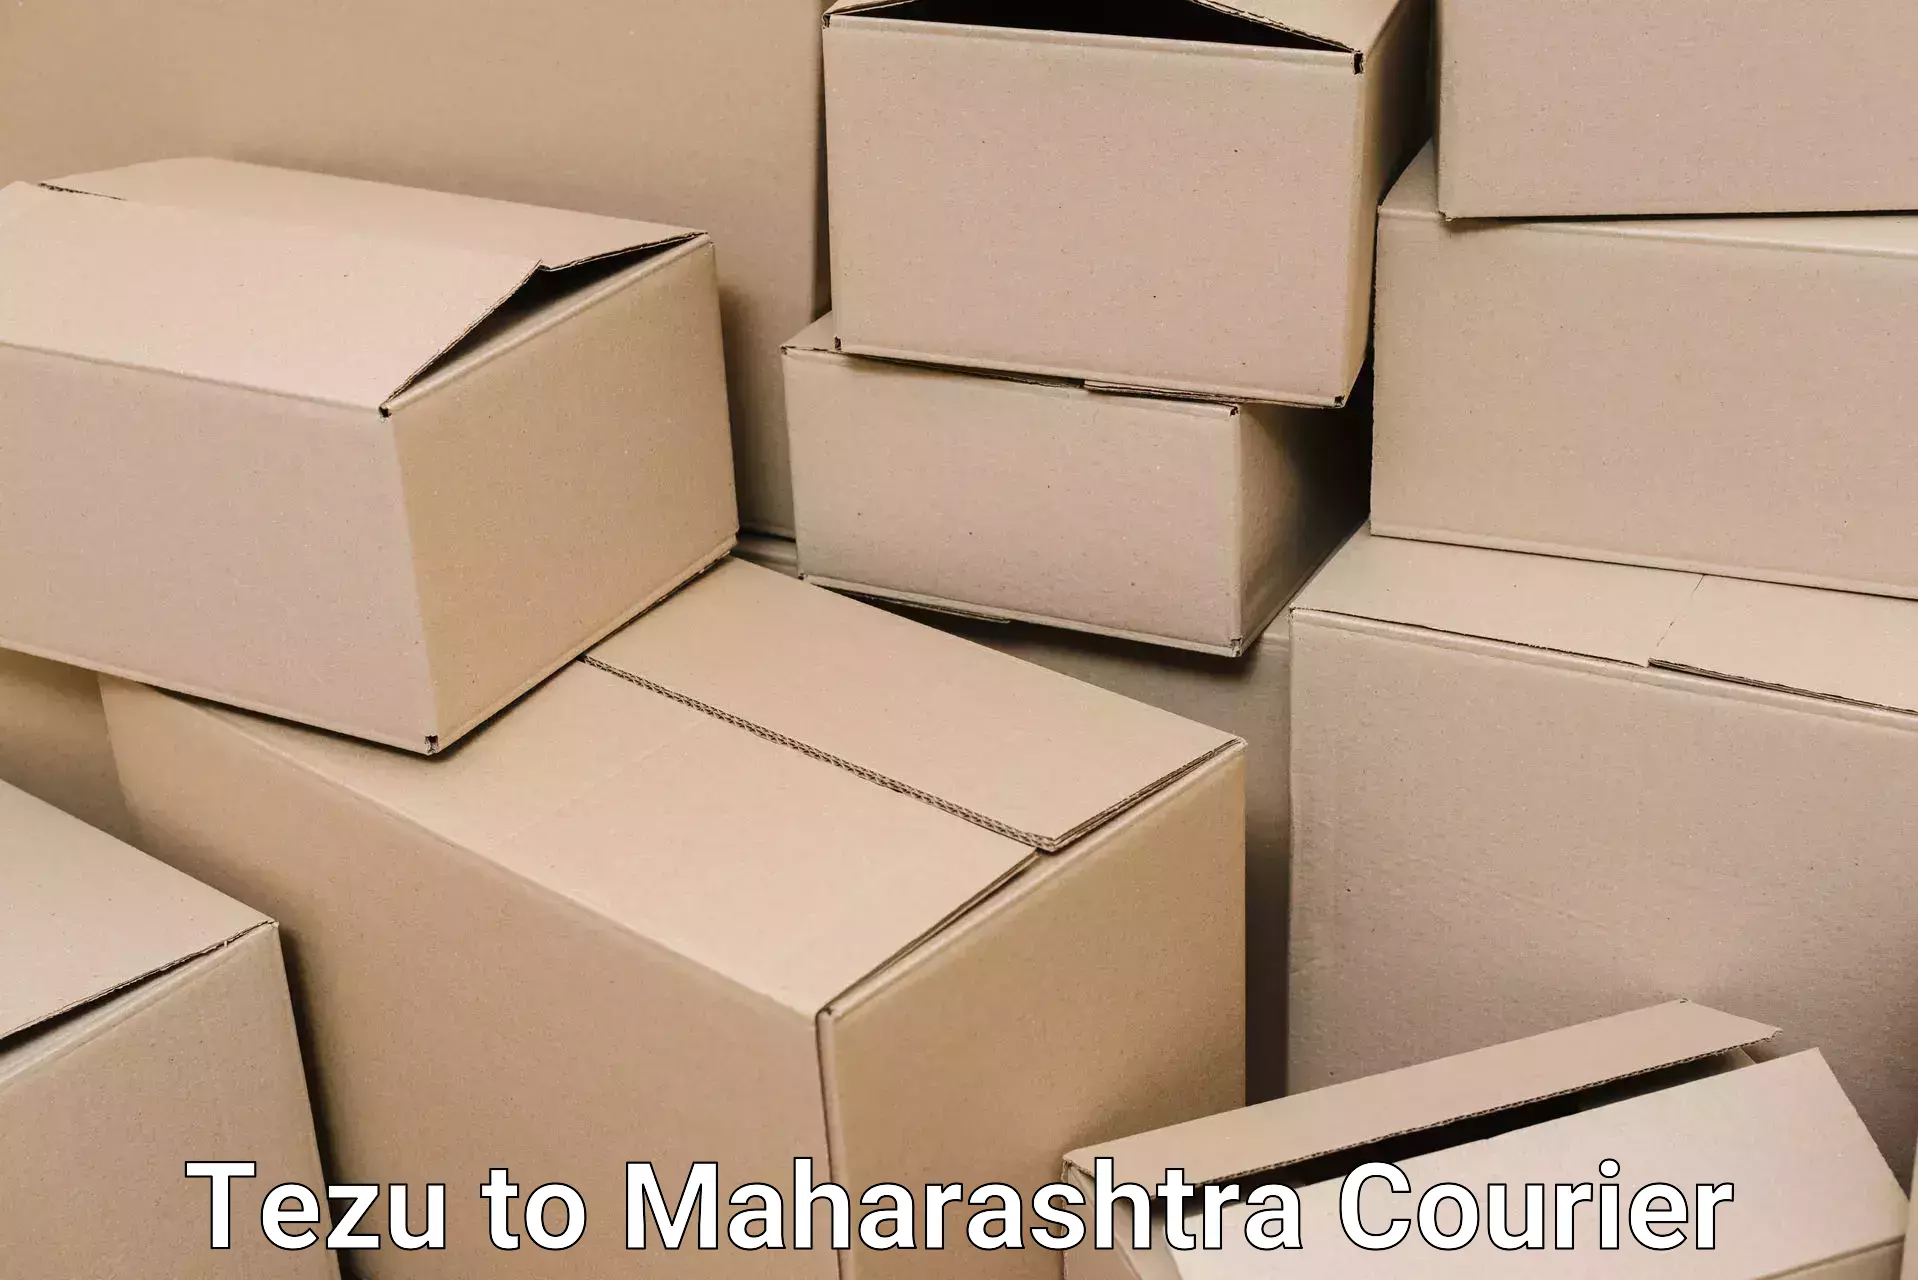 Reliable goods transport Tezu to IIT Mumbai